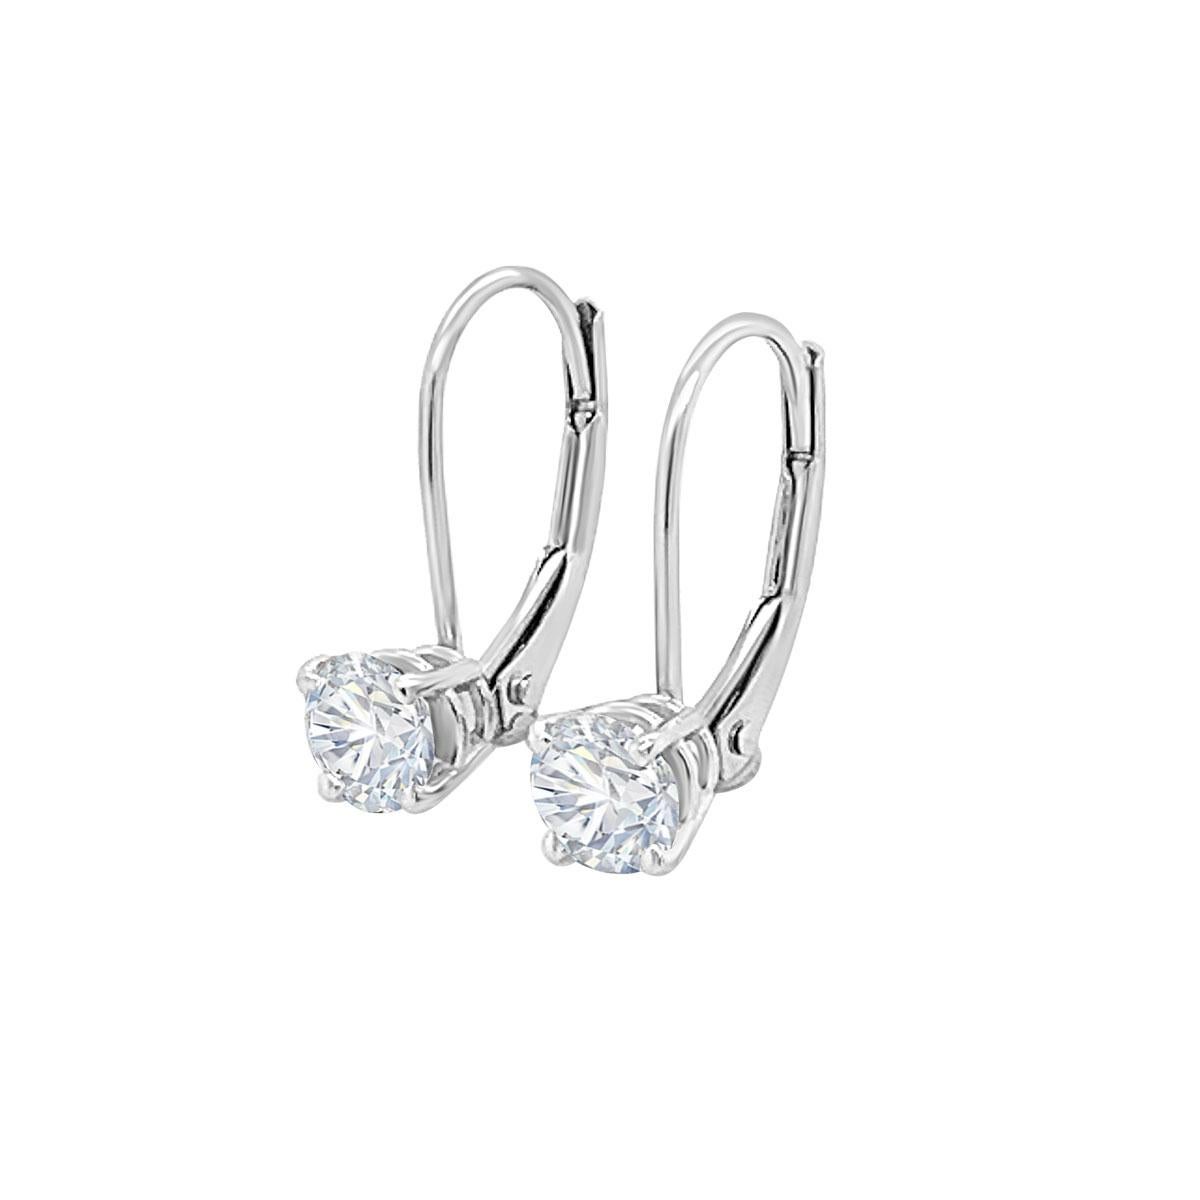 Diese leicht zu tragenden Ohrringe im Stil von Tropfen mit Hebelrückseite zeichnen sich durch zwei perfekt aufeinander abgestimmte runde Diamanten von 0,32 Karat aus.

Einzelheiten zum Produkt: 

Zentrum Edelstein Typ: NATURDIAMANT
Farbe des